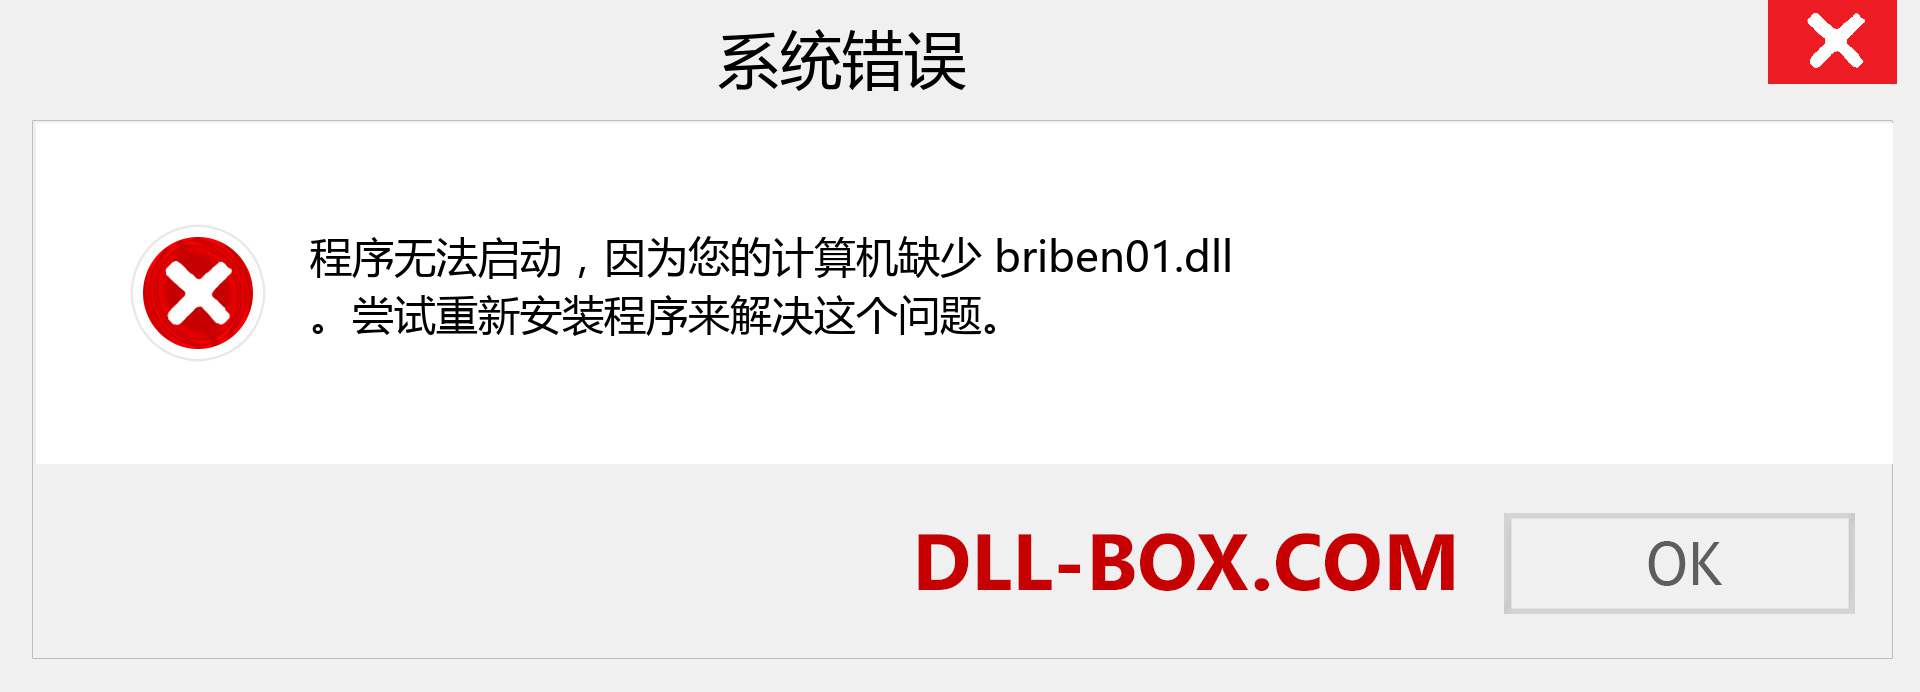 briben01.dll 文件丢失？。 适用于 Windows 7、8、10 的下载 - 修复 Windows、照片、图像上的 briben01 dll 丢失错误